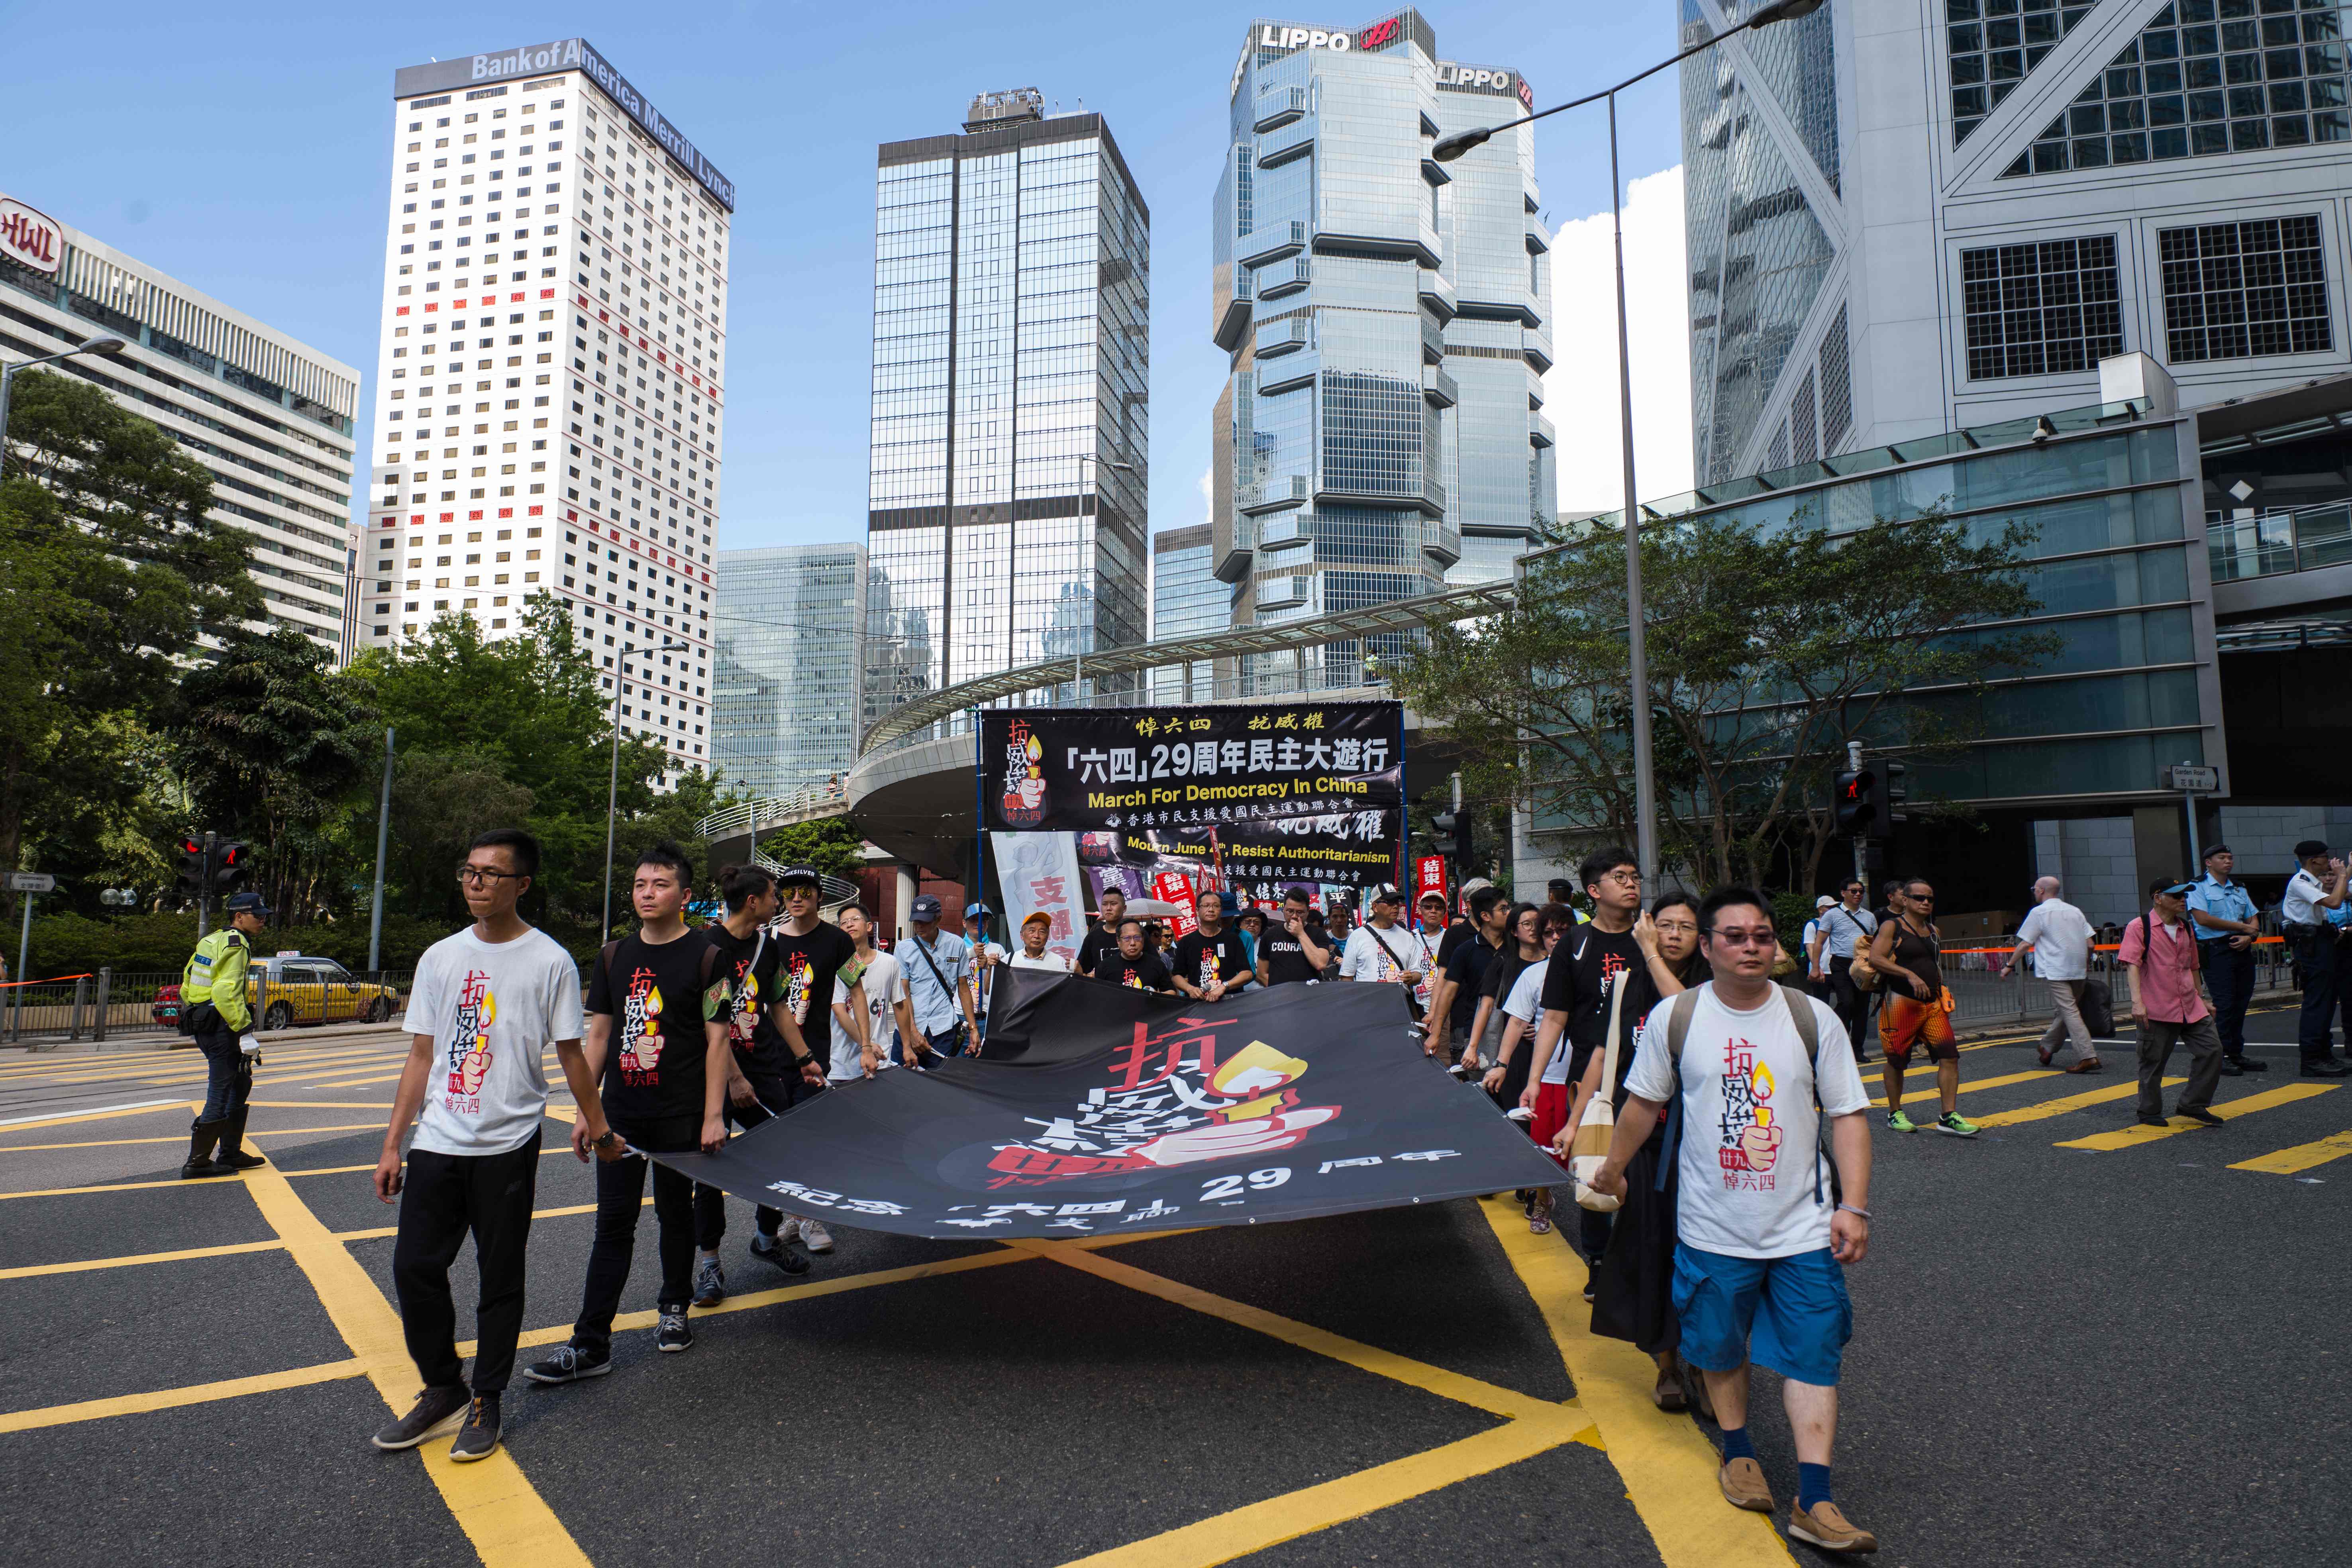 تظاهرات فى الصين لإحياء ذكرى مجزرة تياننمن